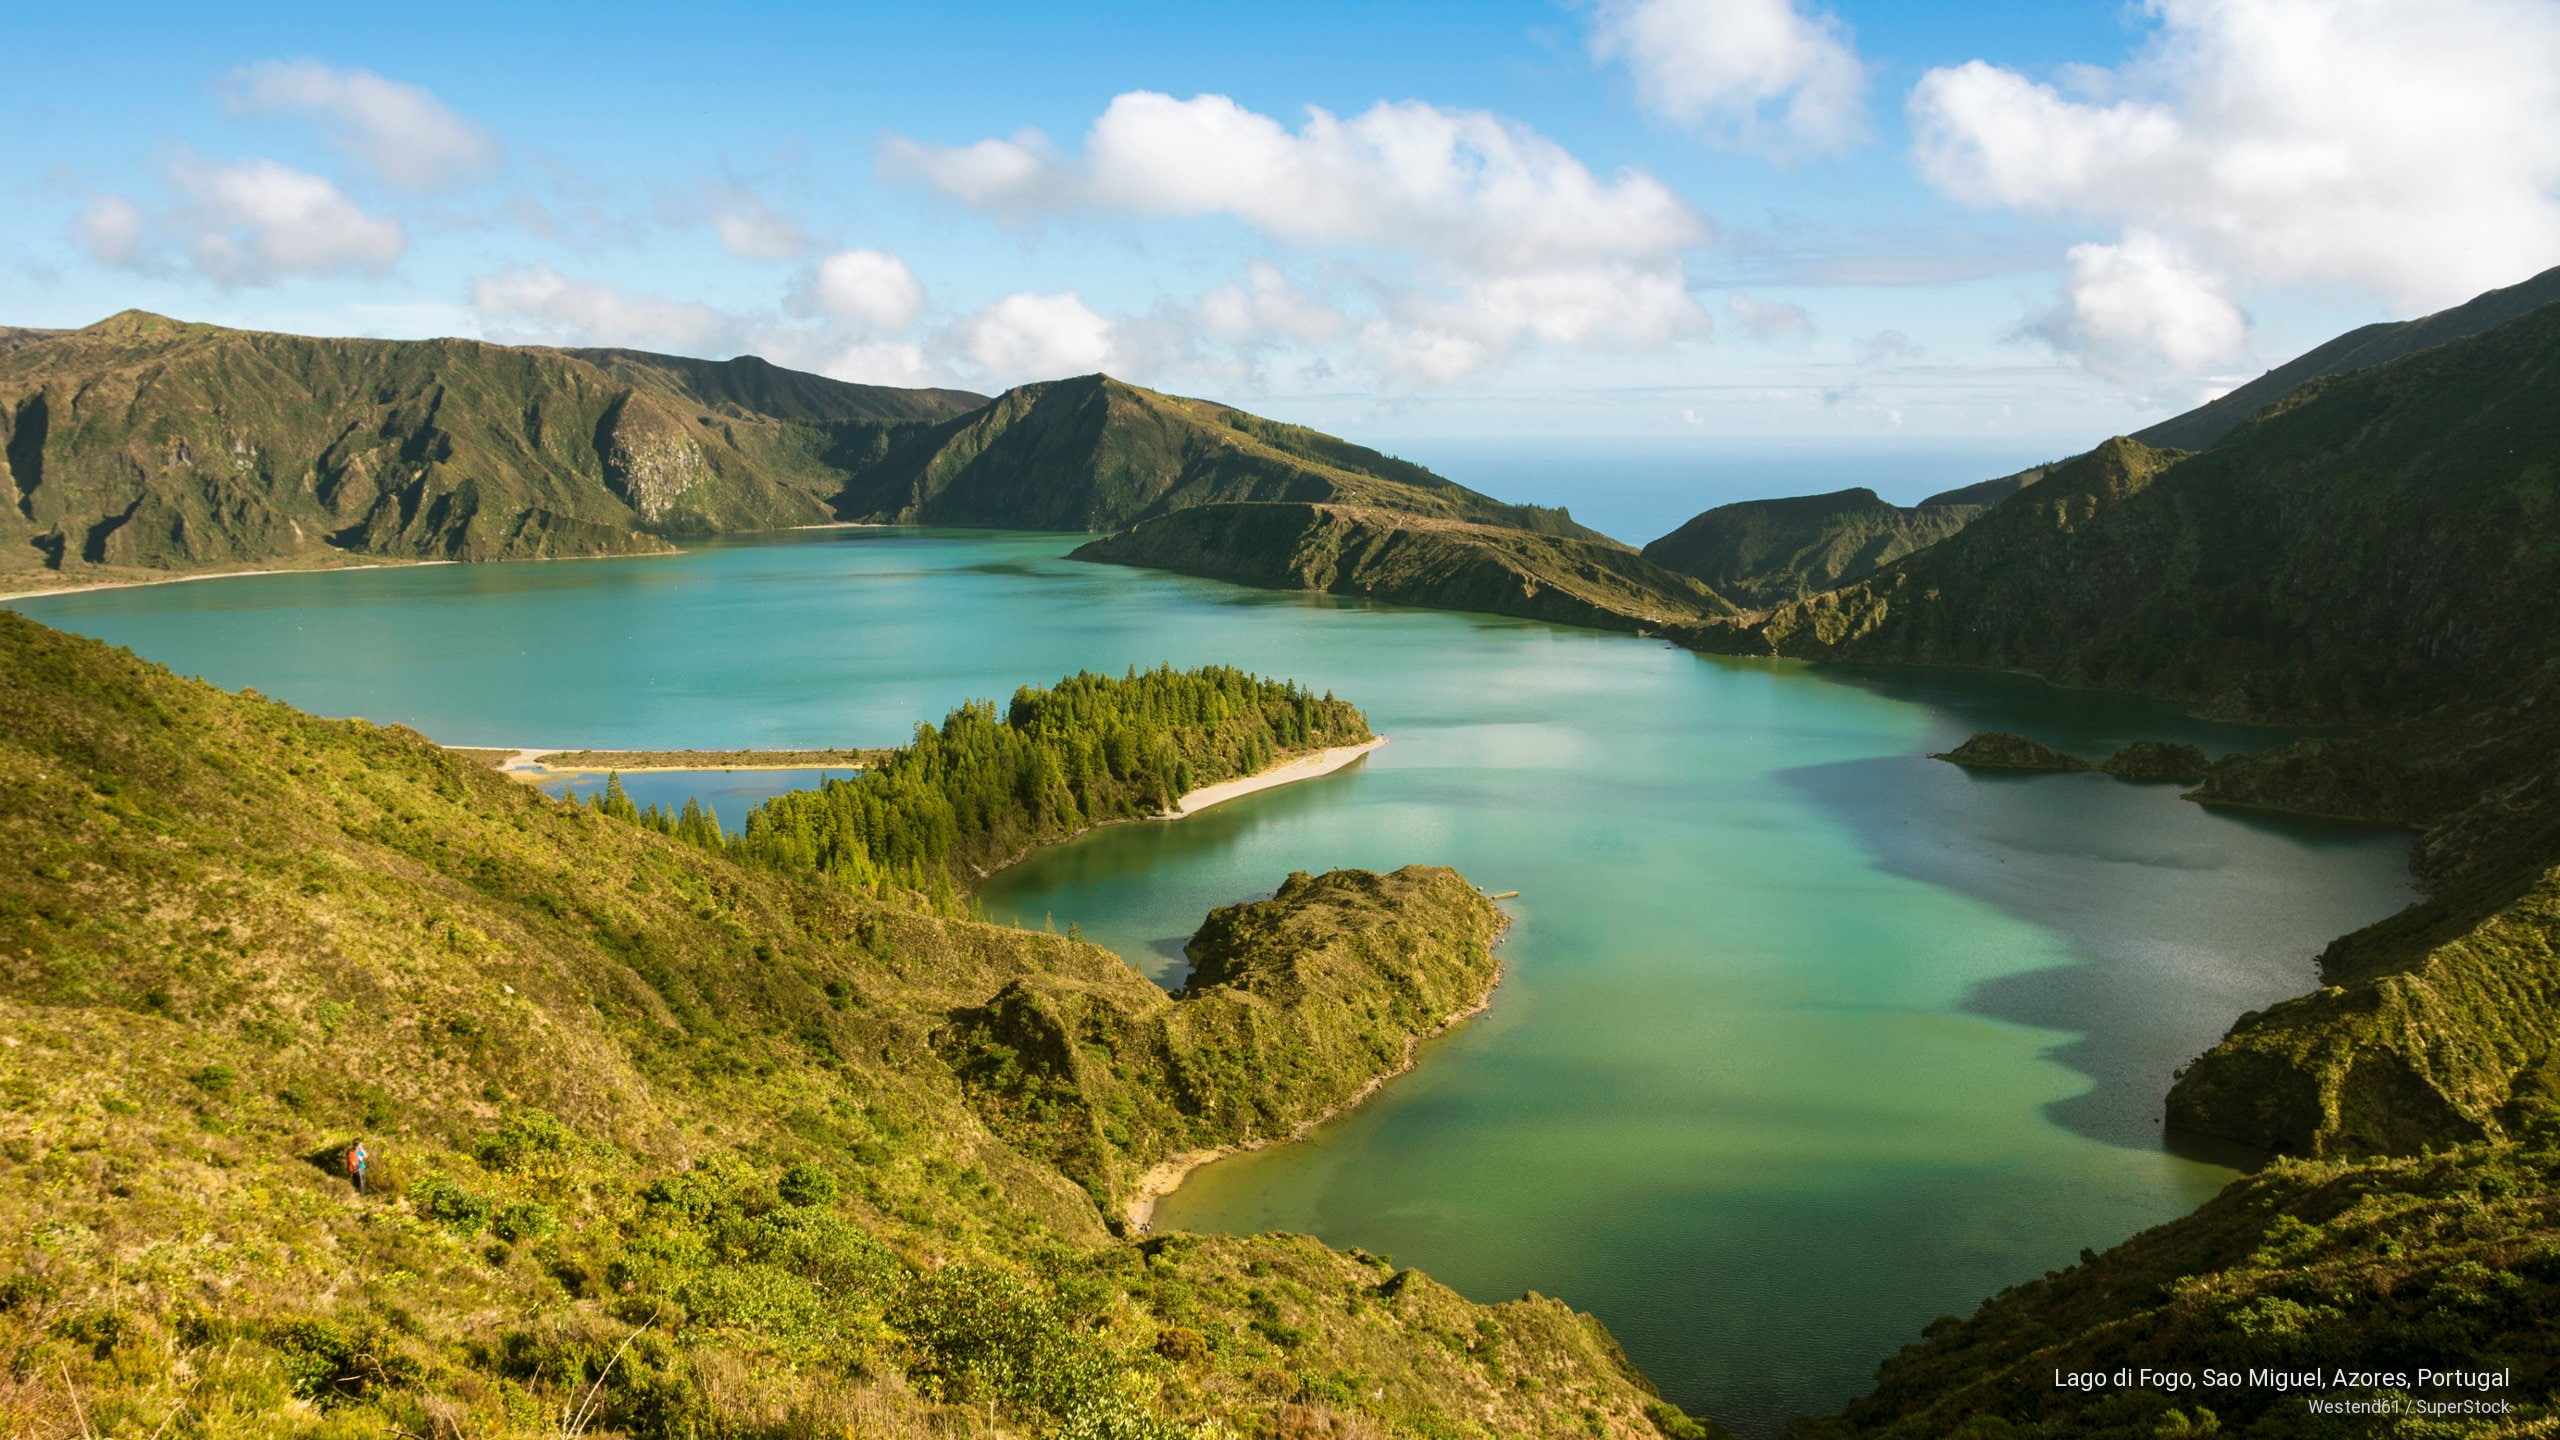 Lago di Fogo, Sao Miguel, Azores, Portugal, Islands